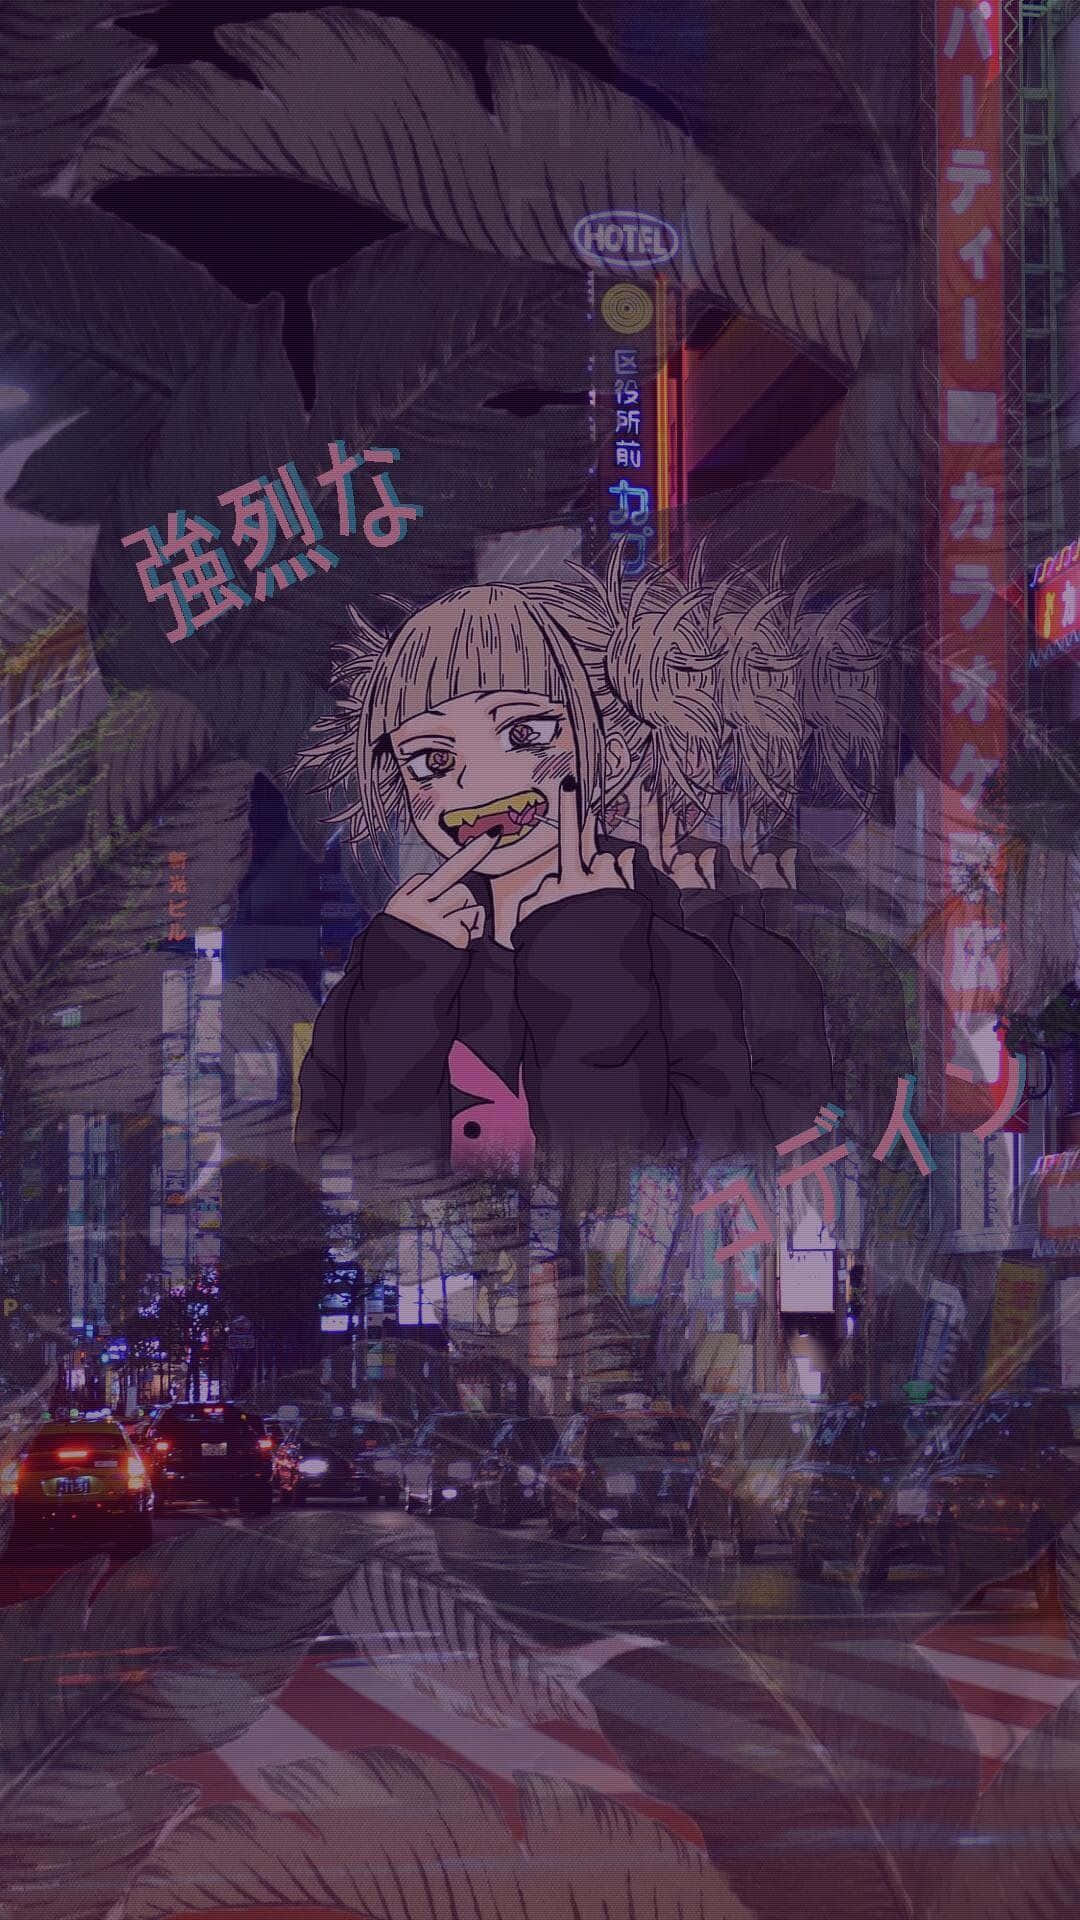 Anime Girl Urban Nightlife Aesthetic.jpg Wallpaper